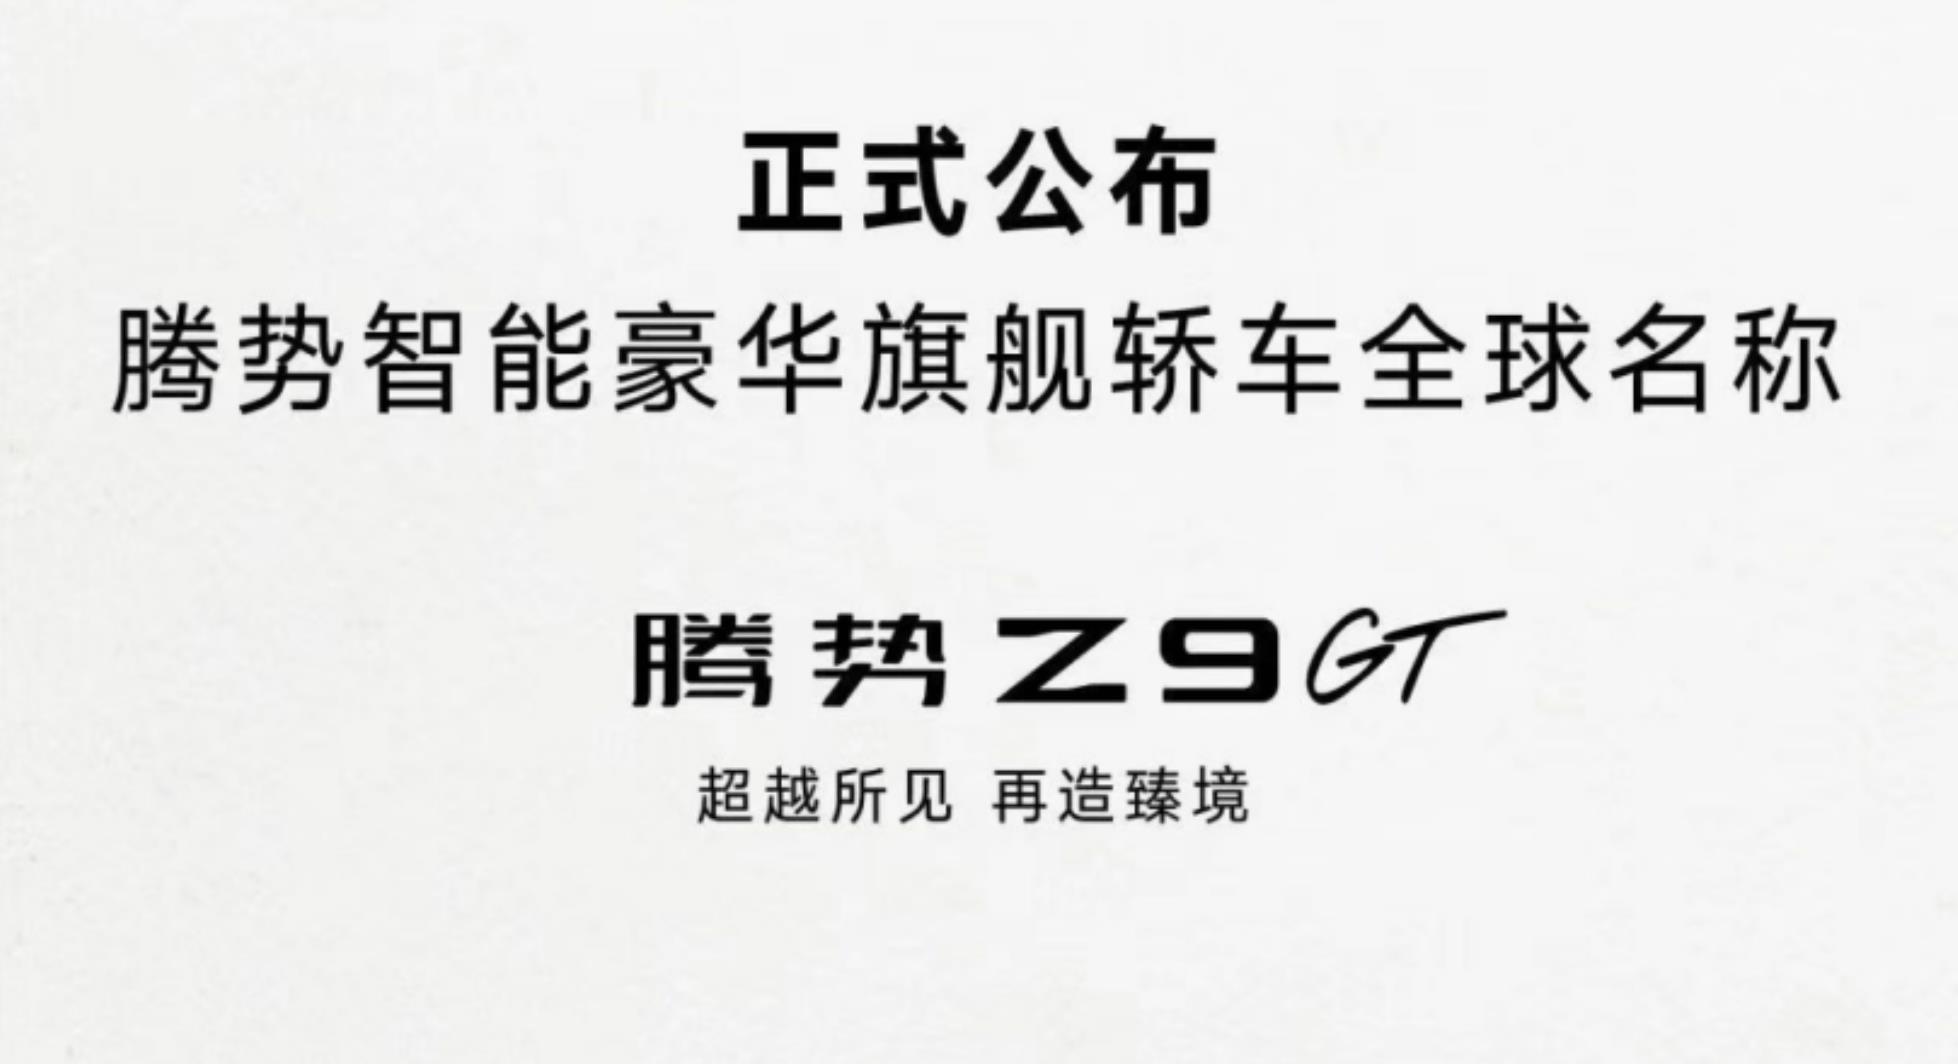 腾势全新轿车定名Z9GT，将于北京车展首发亮相